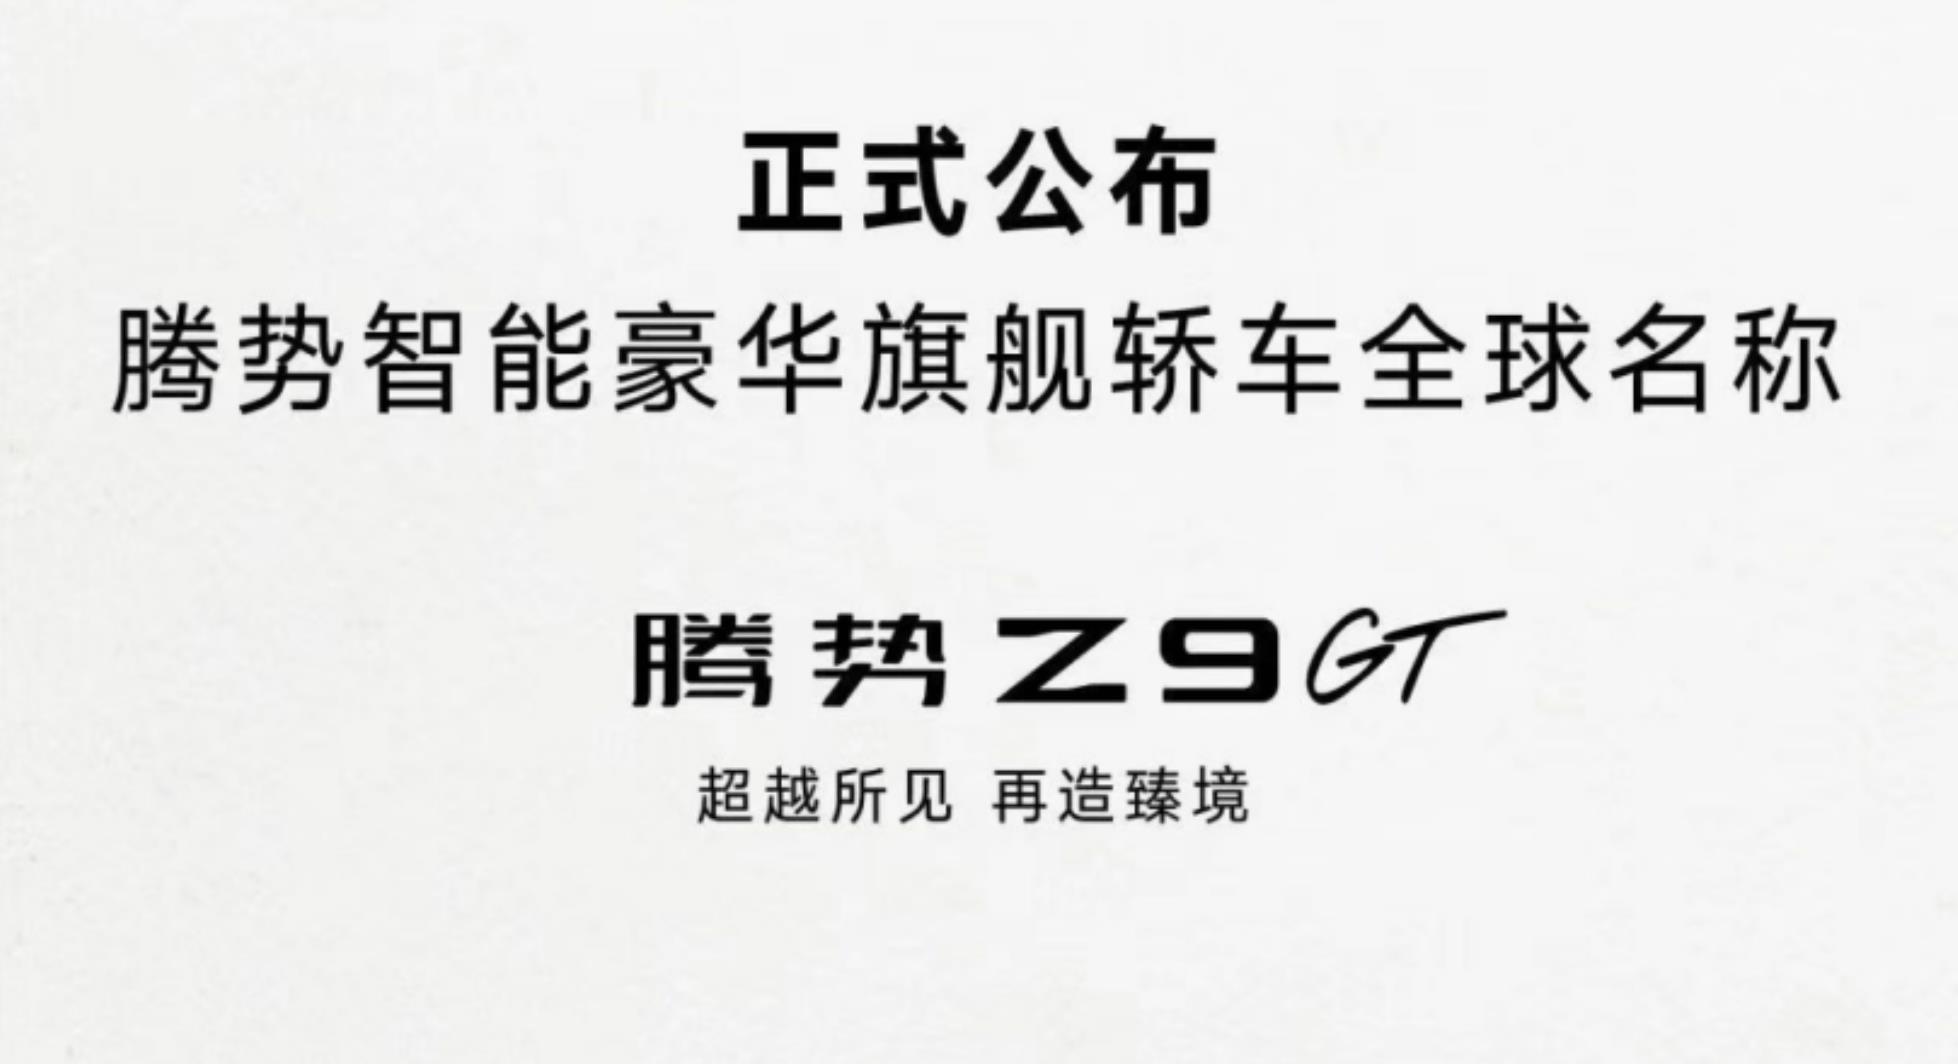 腾势全新轿车定名Z9GT，将于北京车展首发亮相